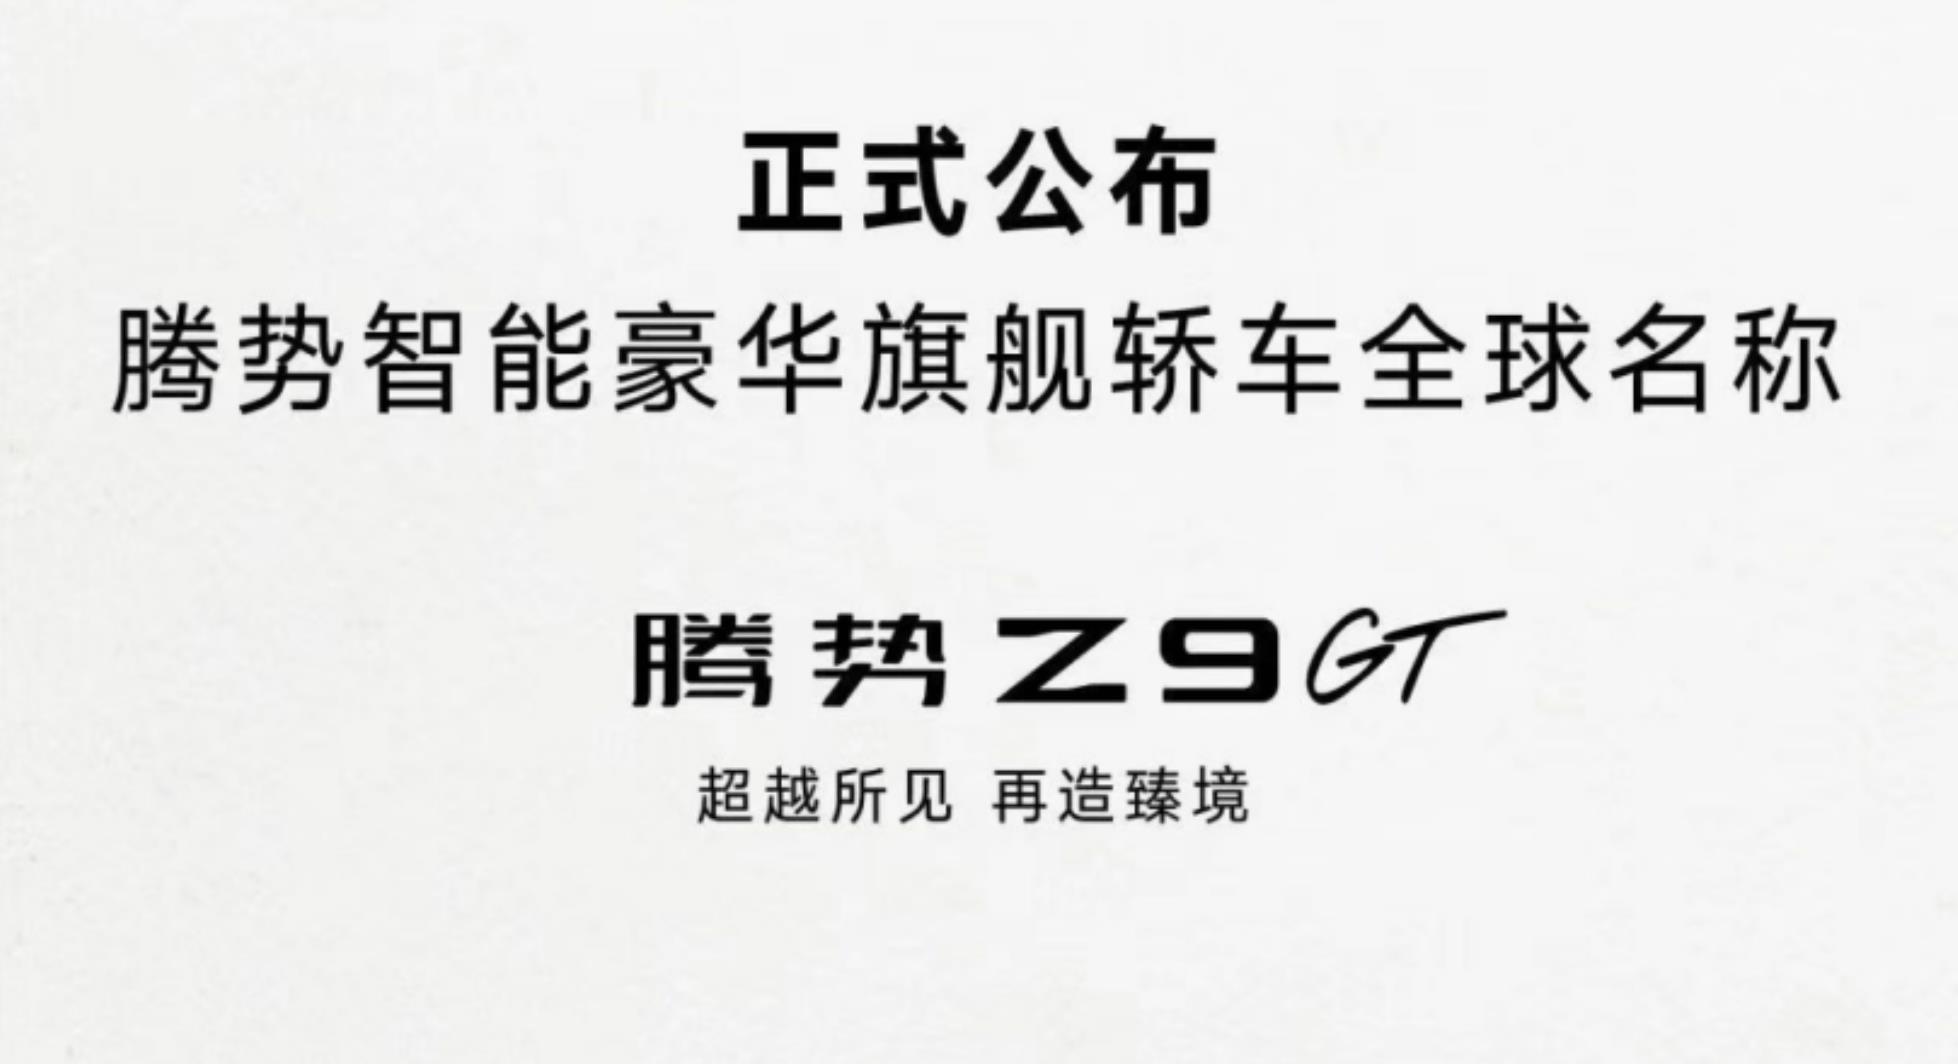 腾势全新轿车定名Z9GT，将于北京车展首发亮相